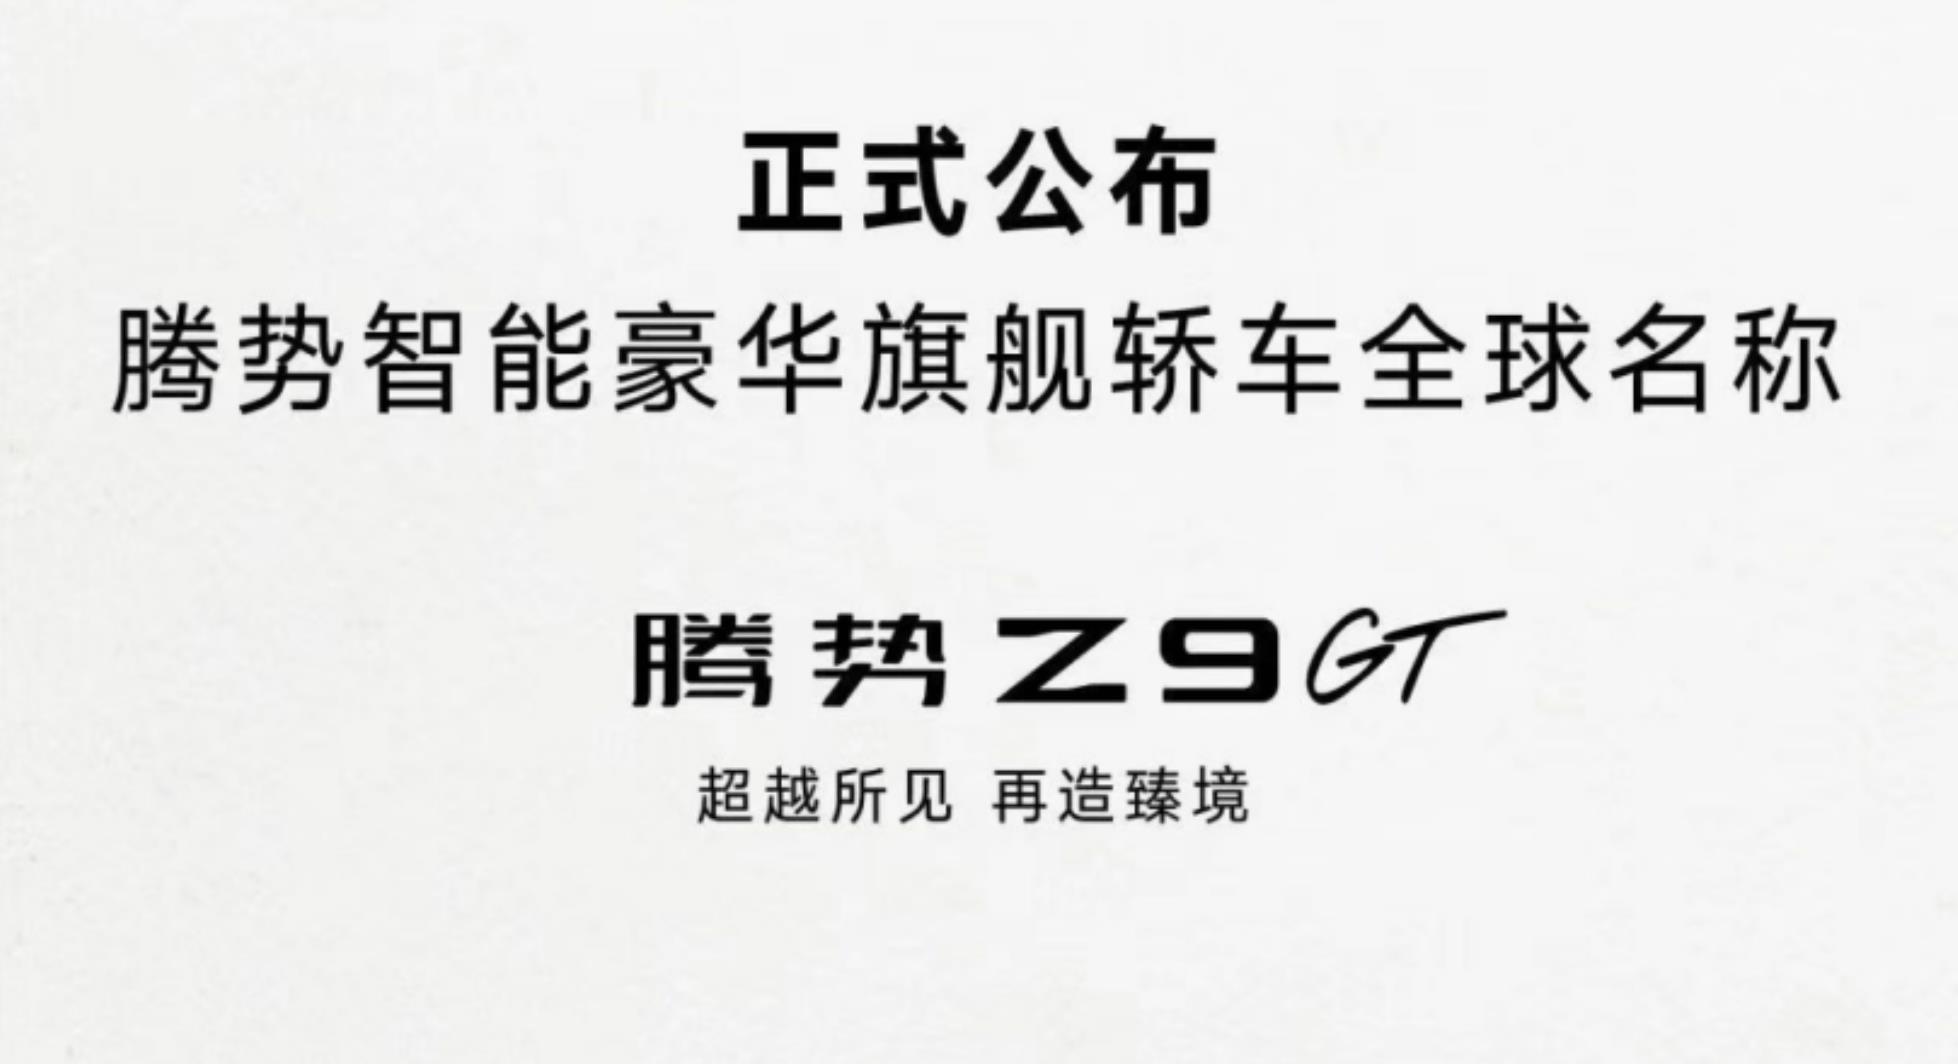 腾势全新轿车定名Z9GT，将于北京车展首发亮相